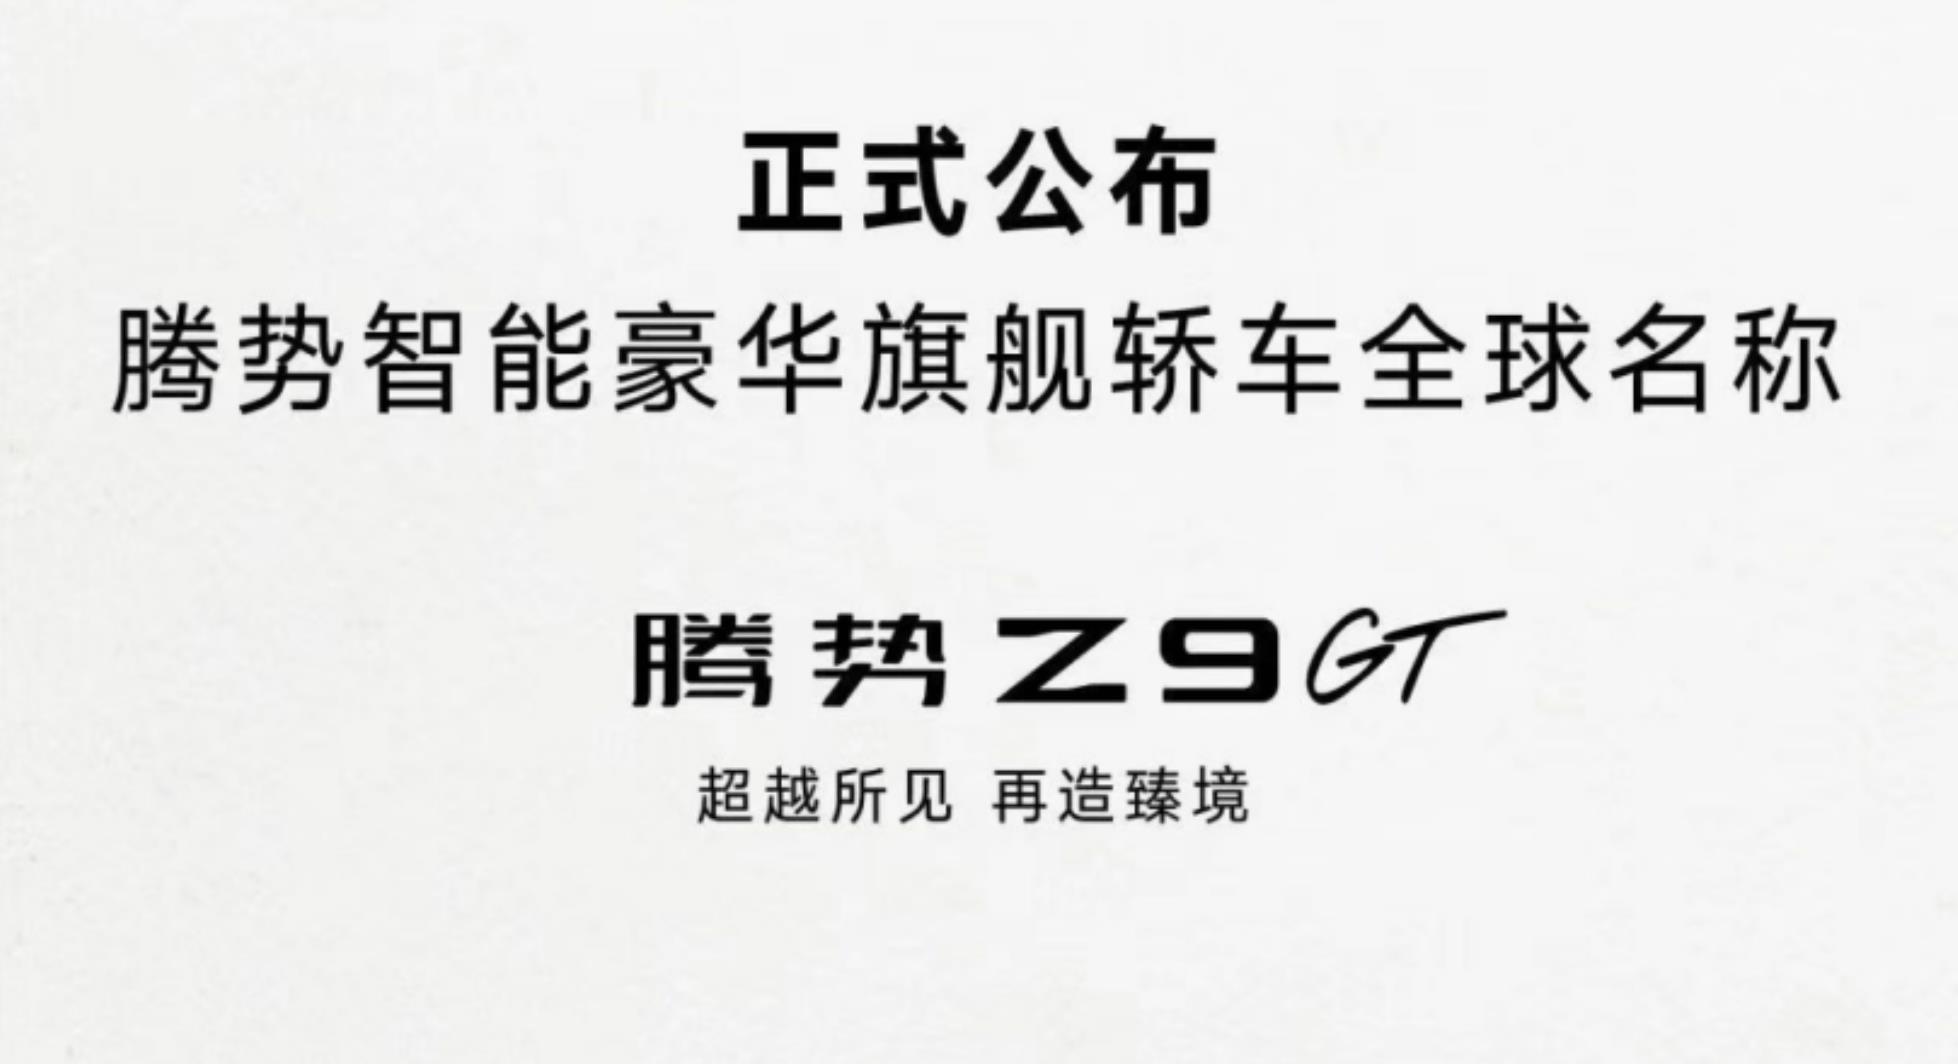 腾势全新轿车定名Z9GT，将于北京车展首发亮相